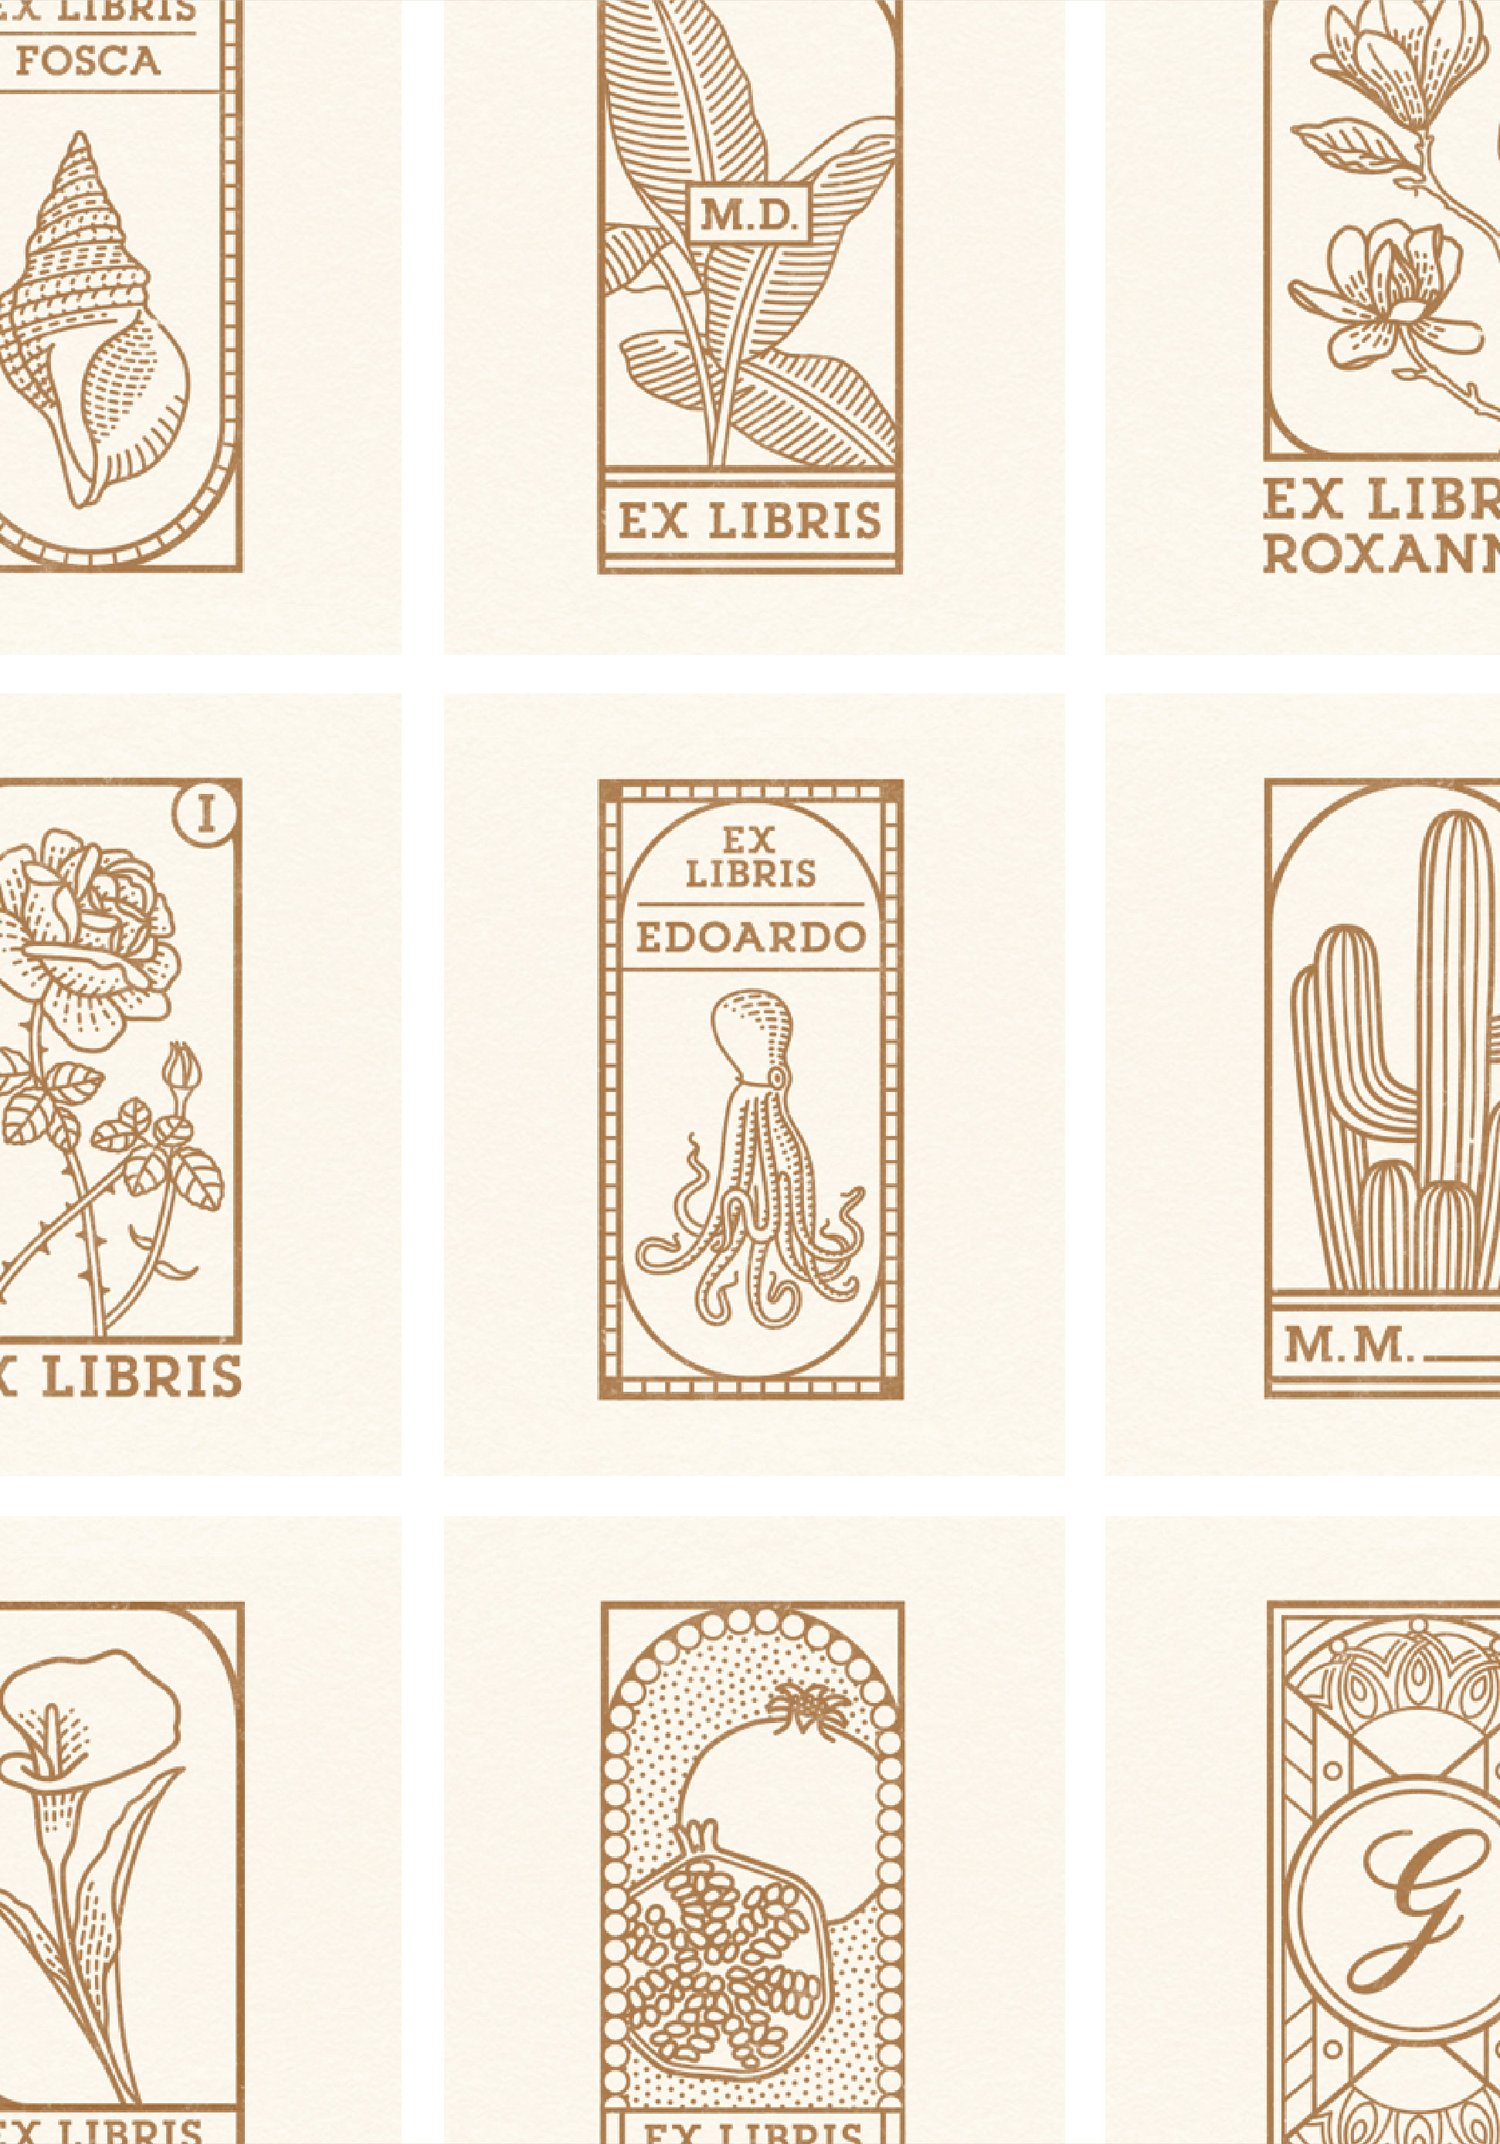 —Ex Libris (semi) Personalizzato / Custom Stamp (partial  customization)